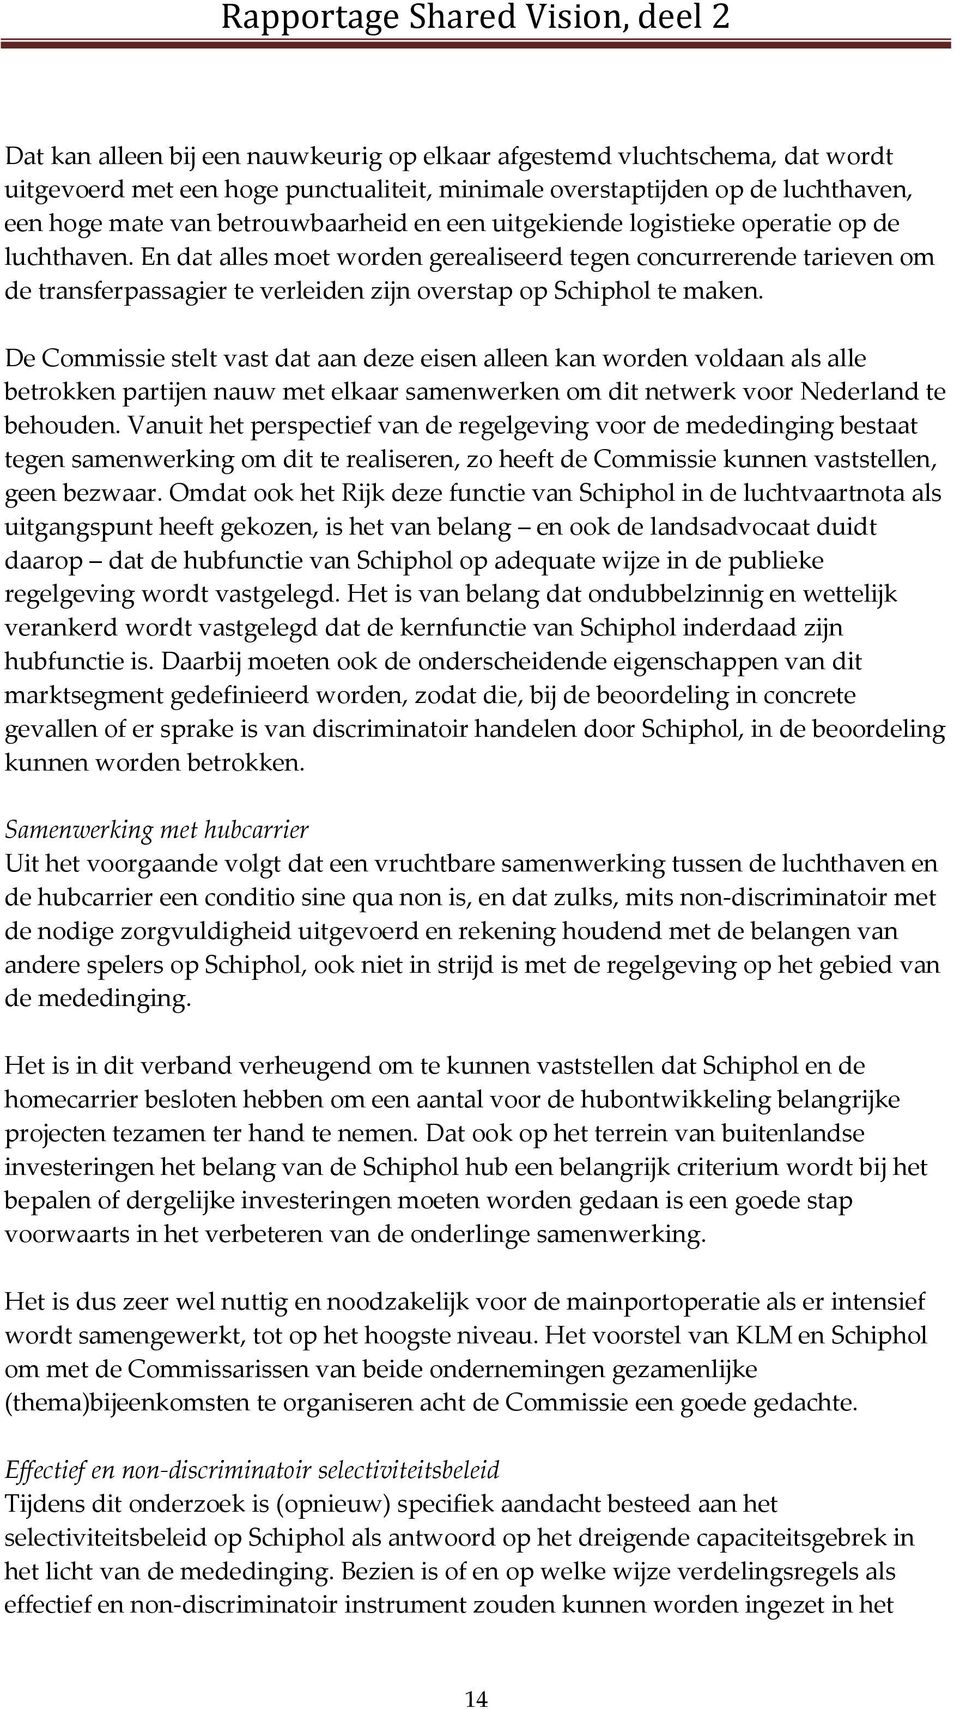 De Commissie stelt vast dat aan deze eisen alleen kan worden voldaan als alle betrokken partijen nauw met elkaar samenwerken om dit netwerk voor Nederland te behouden.